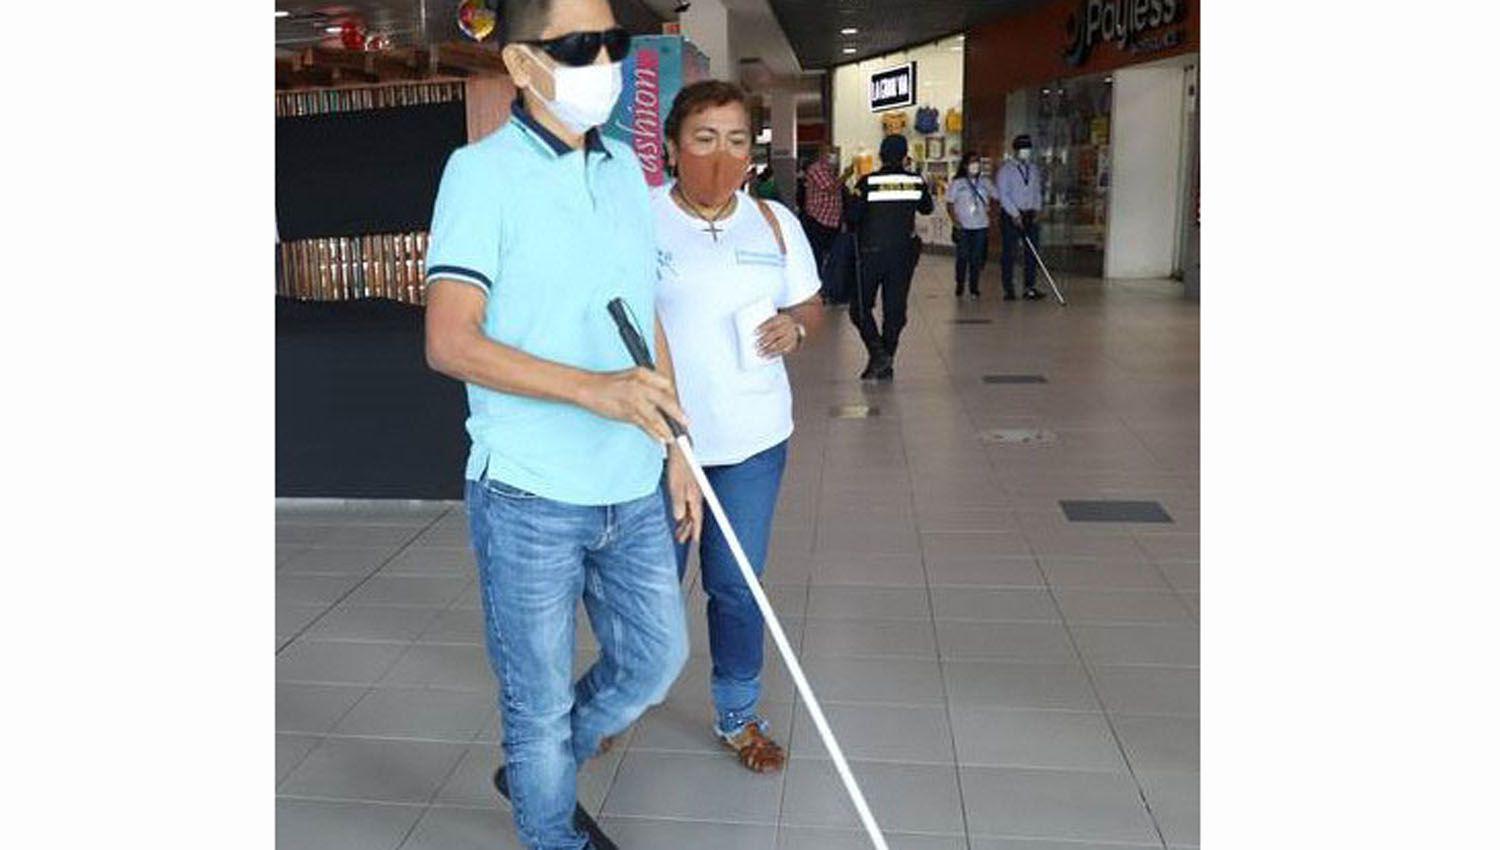 Bastoacuten Blanco- instan a cumplir ciertos haacutebitos de ayuda para personas ciegas